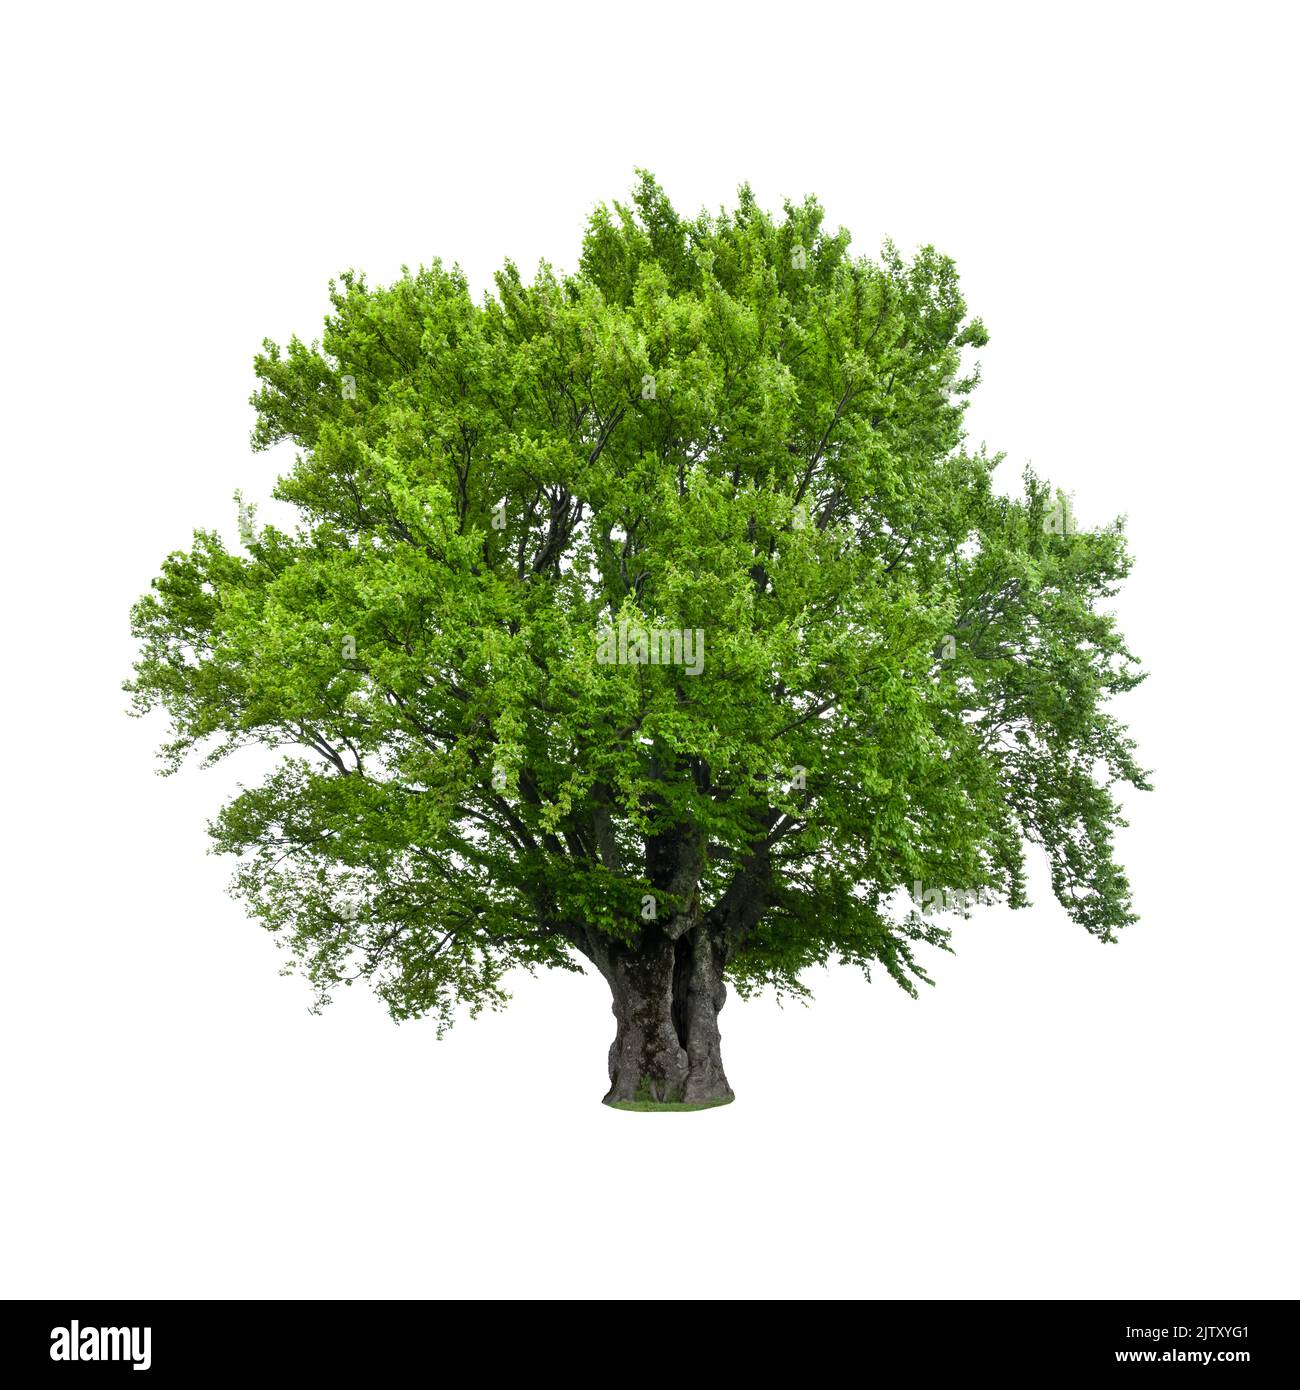 Árbol verde aislado sobre fondo blanco. Gran árbol de haya antiguo con hojas verdes exuberantes Foto de stock